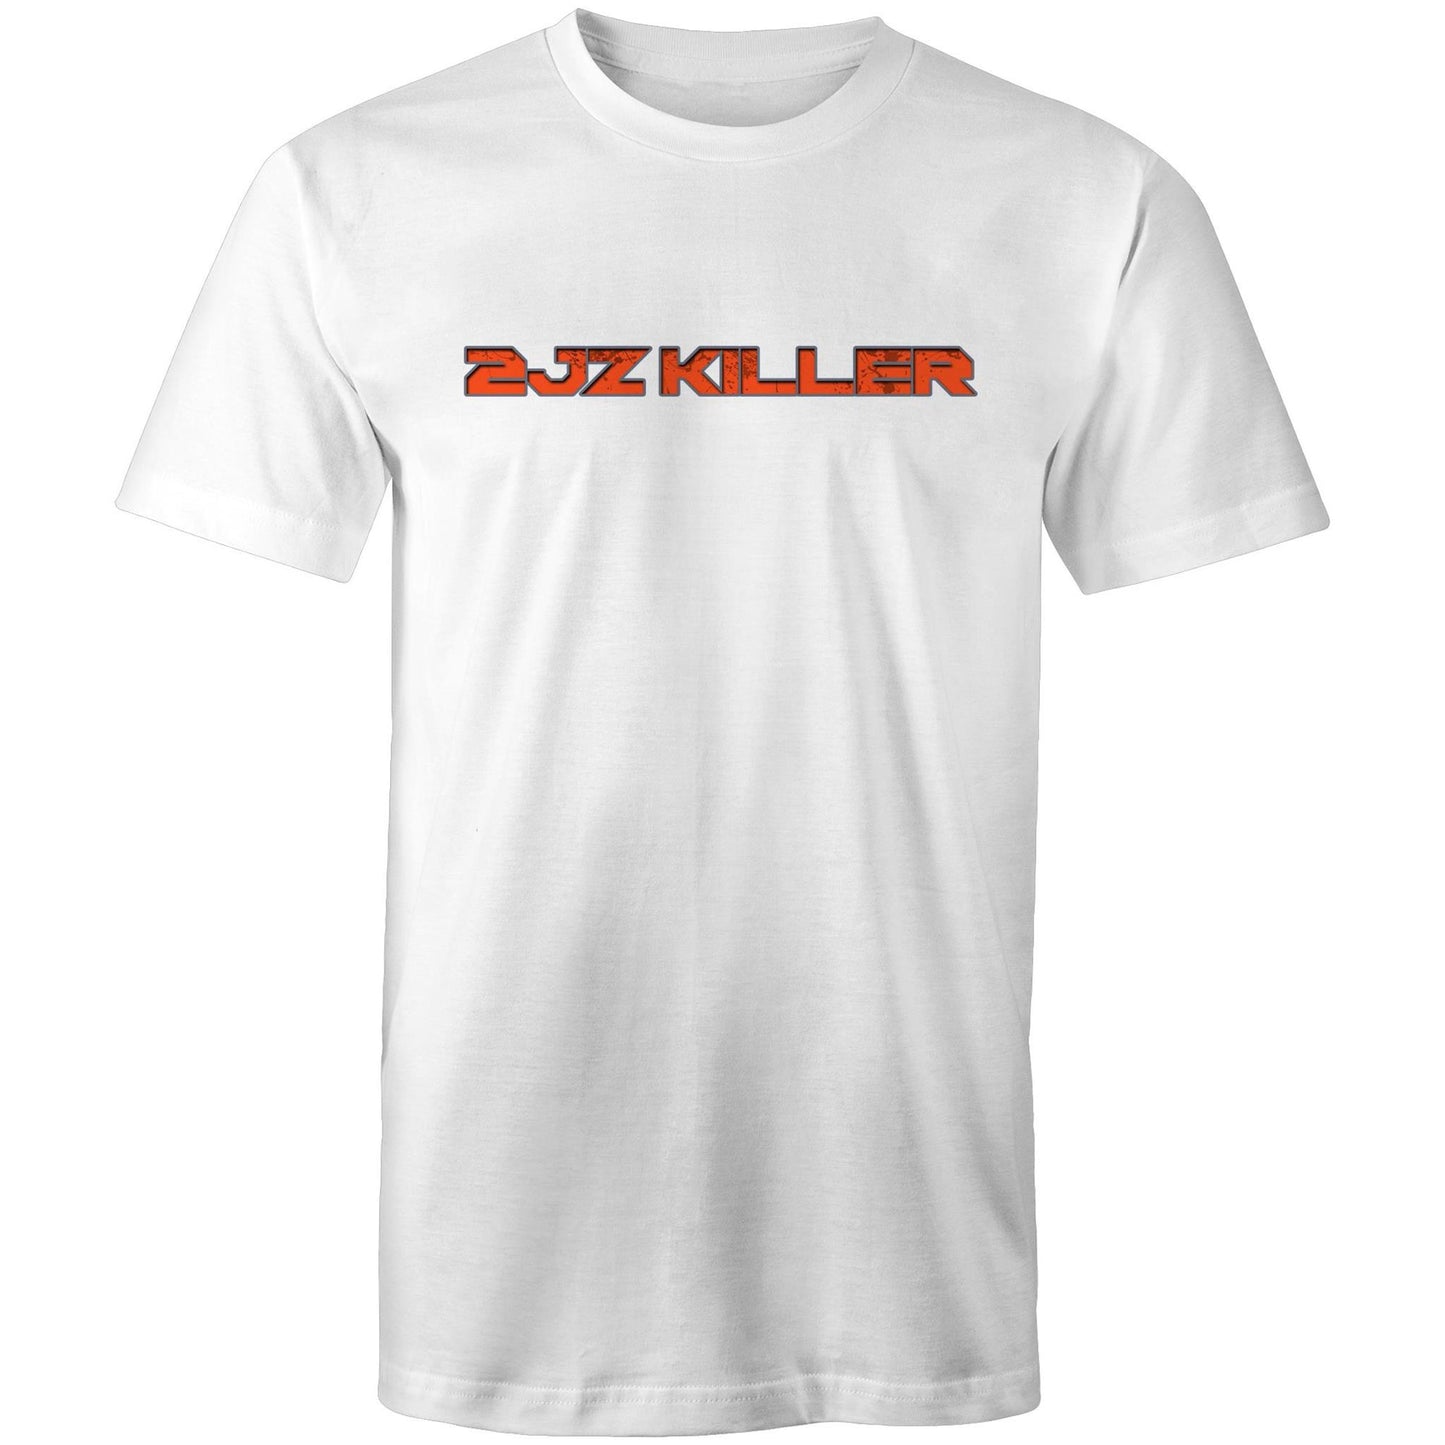 HoonTV - Mens 2JZ KILLER T-Shirt